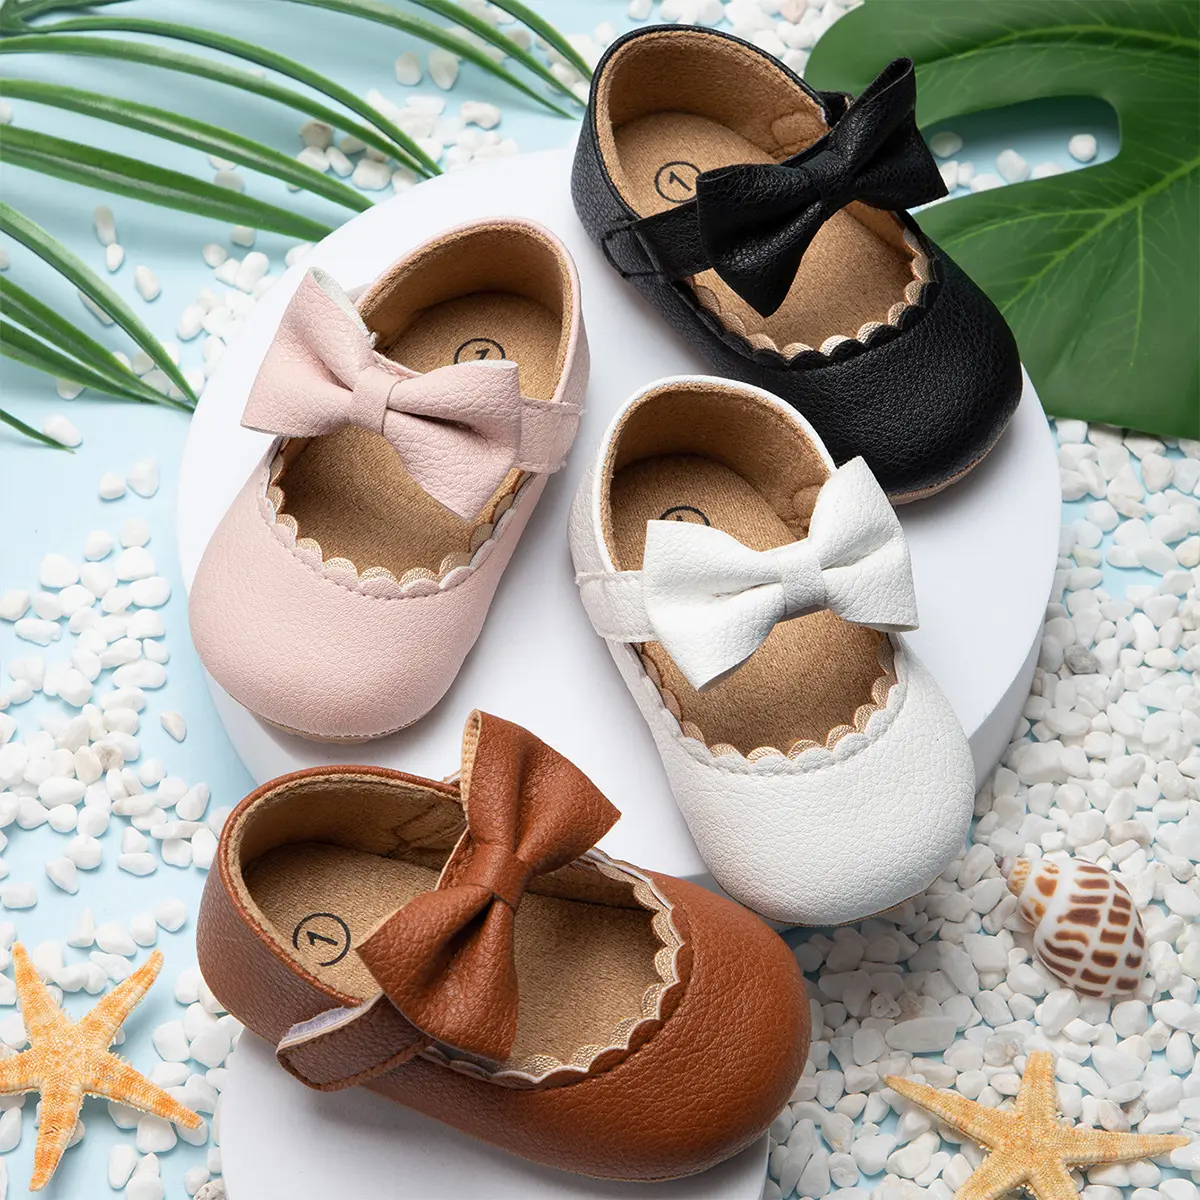 Zapatos de vestir para bebé niña, calzado infantil de piel sintética suave para primeros pasos, zapatos de princesa antideslizantes de diseño para niño pequeño, 2022